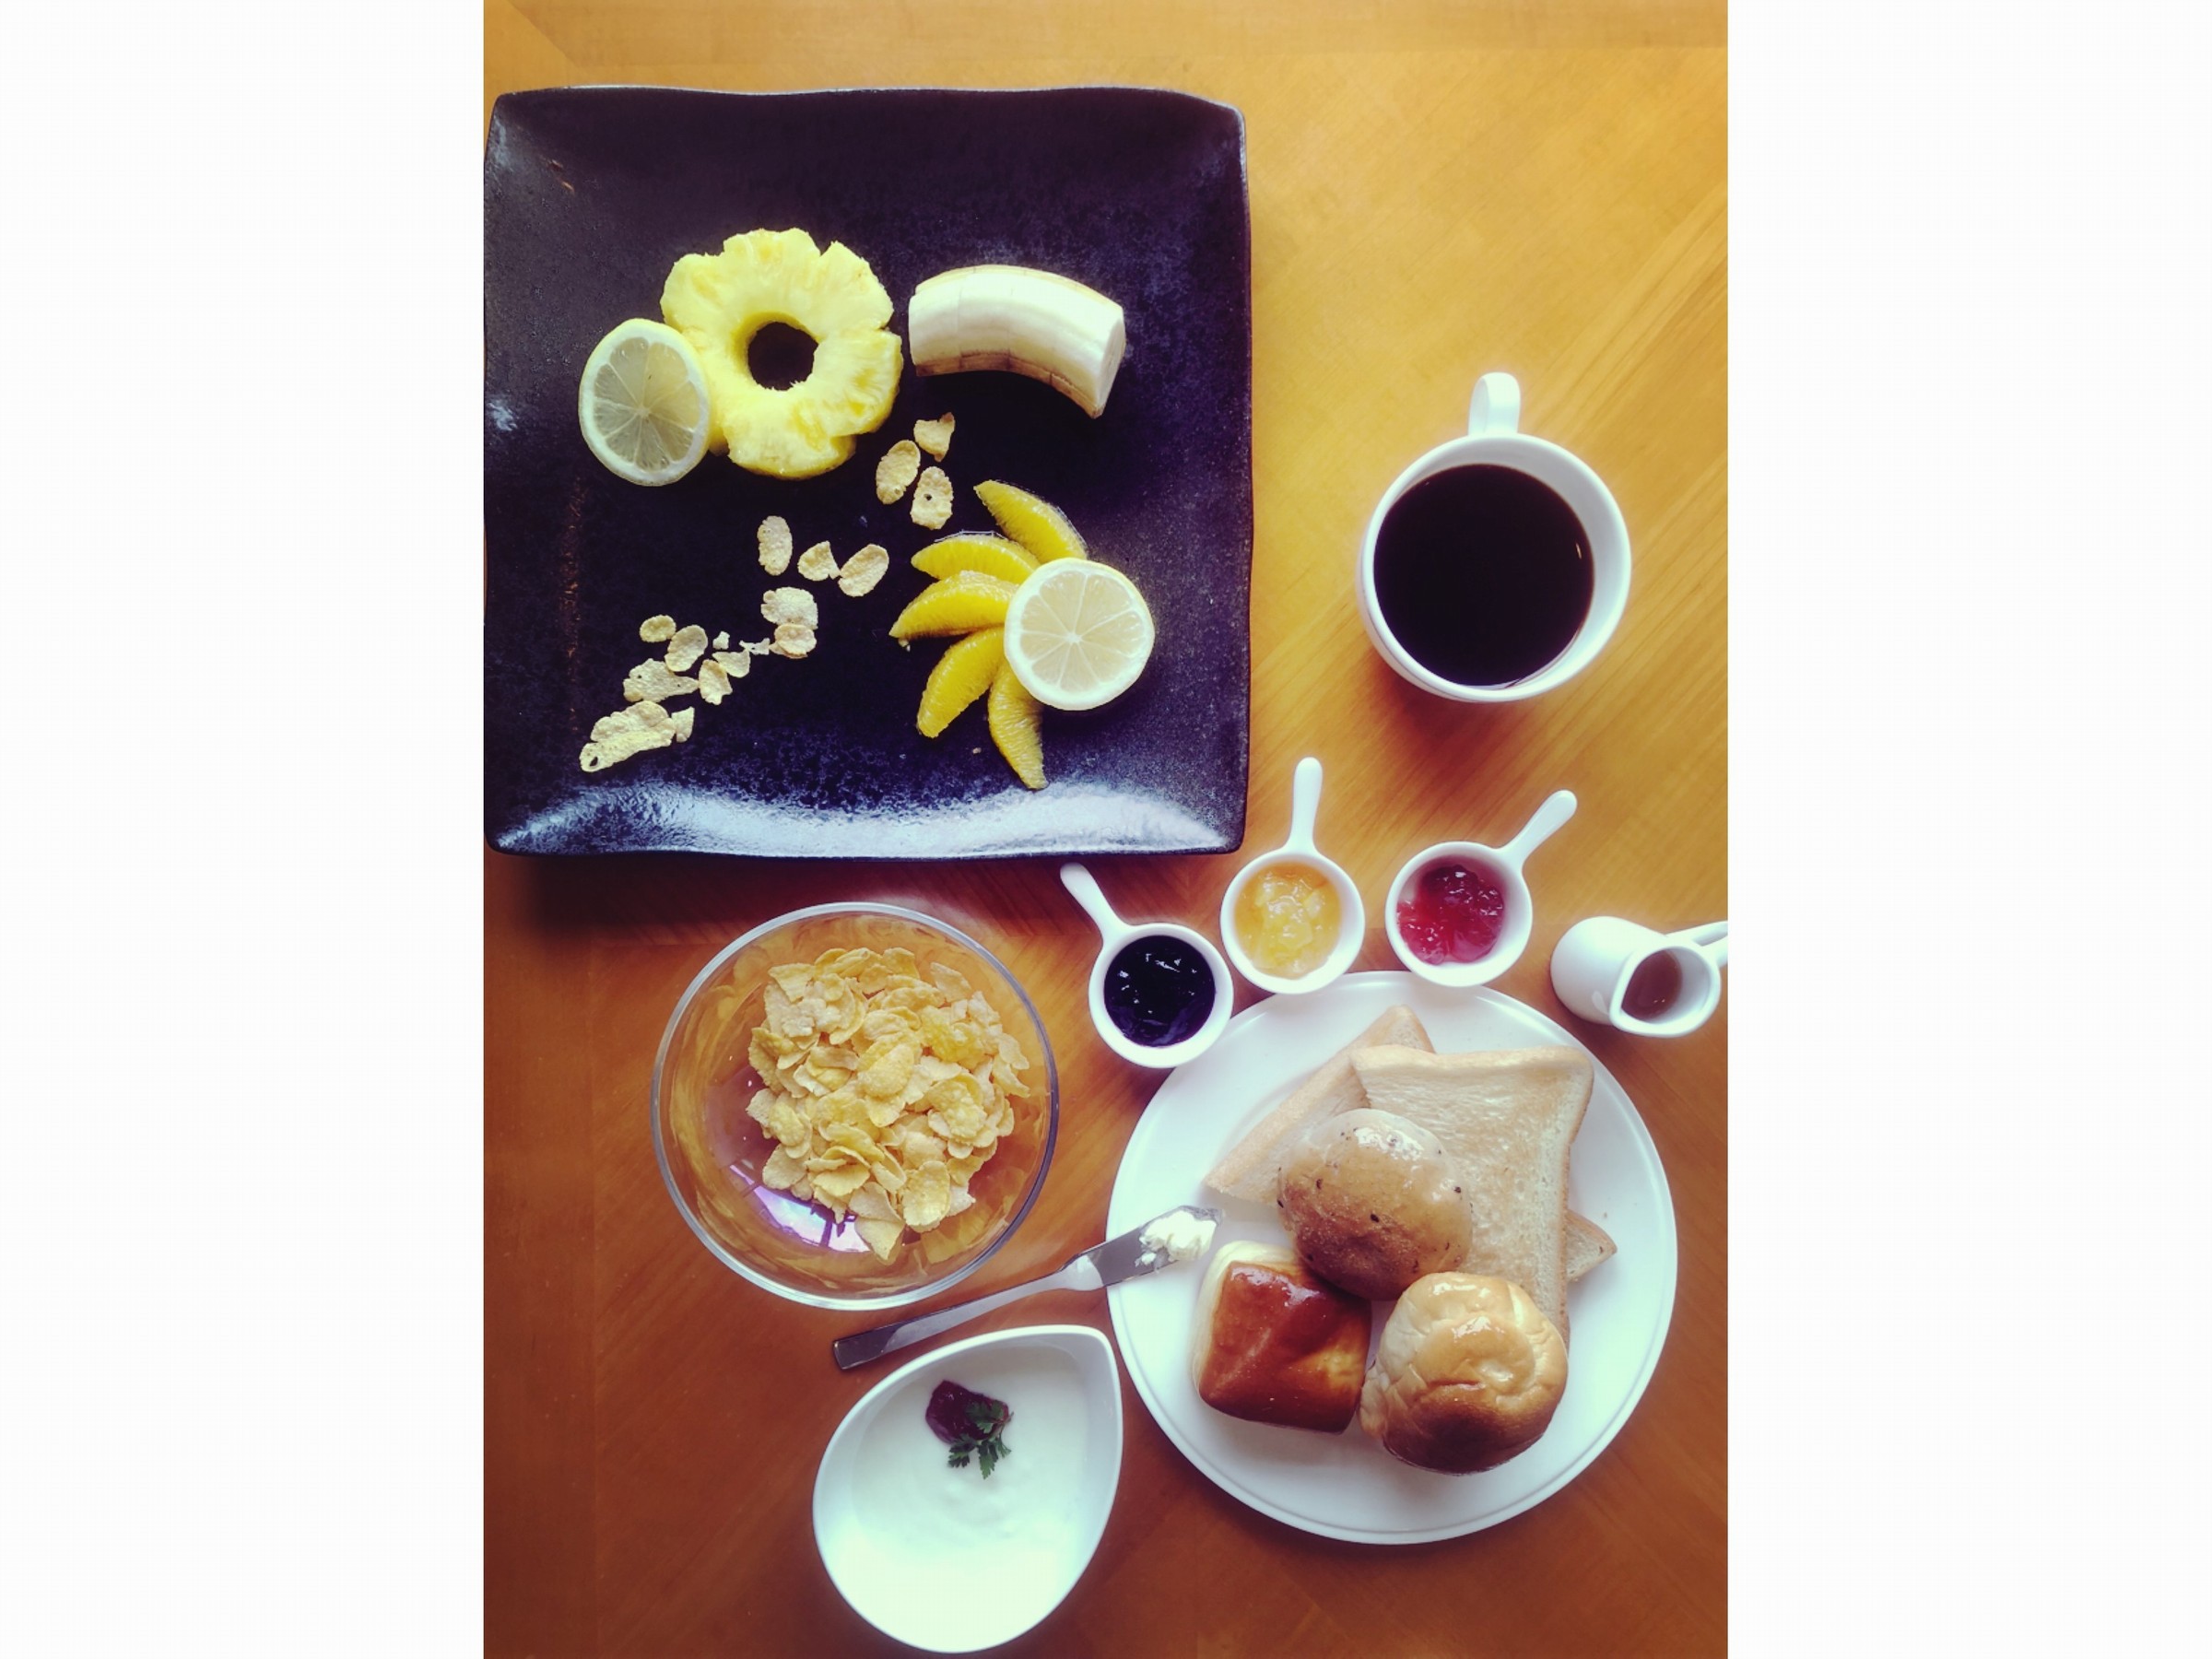 パン・フルーツ・ヨーグルト・コーヒー&ジュース軽めの朝食